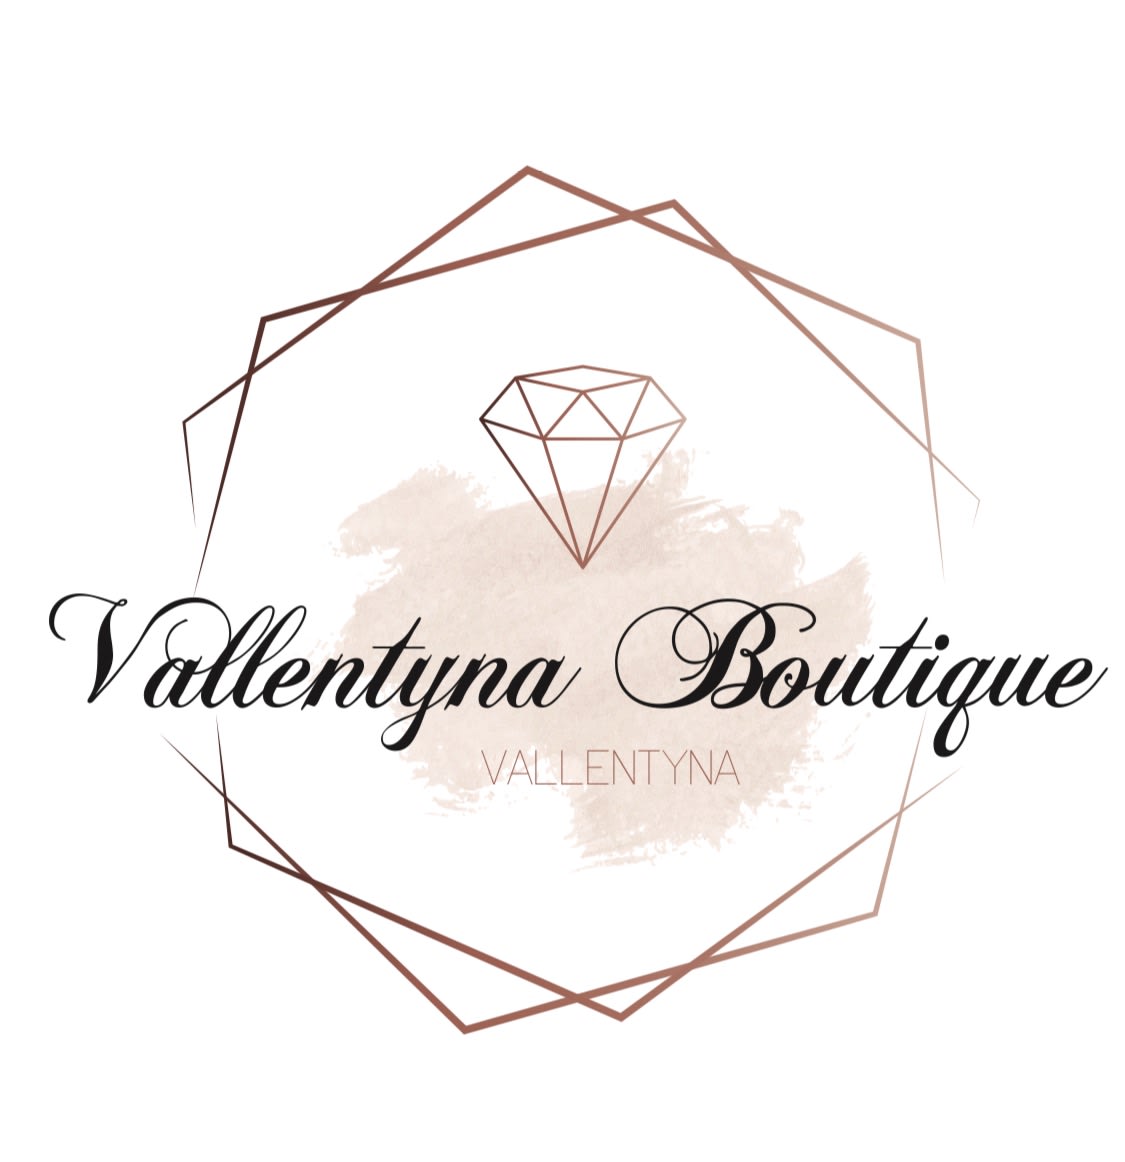 Vallentyna Boutique